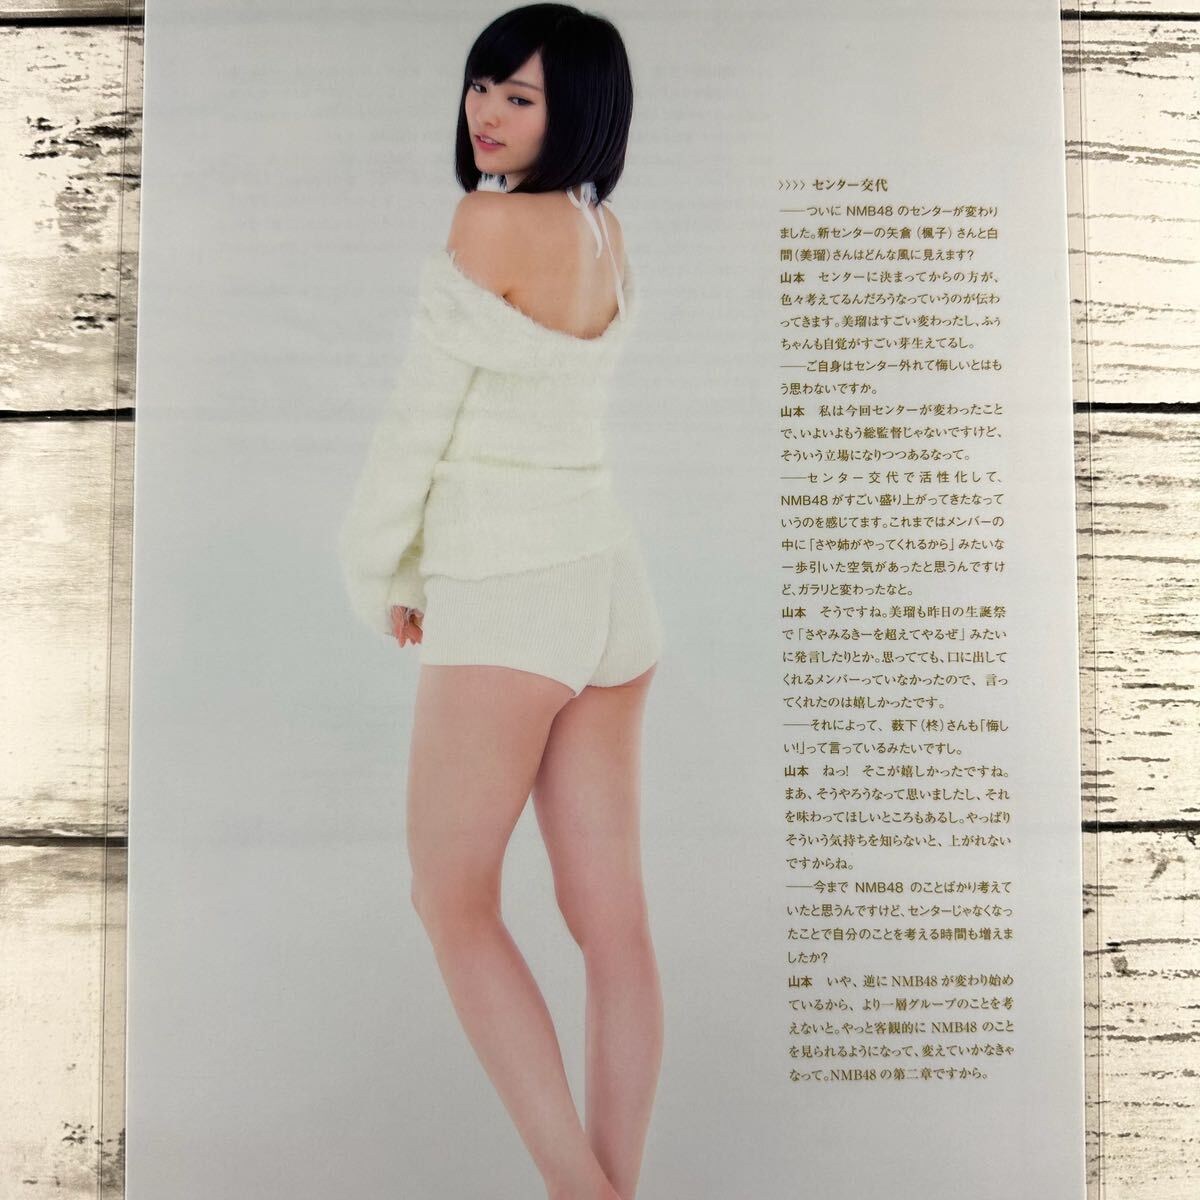 [ высокое качество ламинирование отделка ][ Yamamoto Sayaka NMB48 ] BUBKA 2014 год 12 месяц номер журнал вырезки 8P A4 плёнка купальный костюм bikini model актер женщина super 